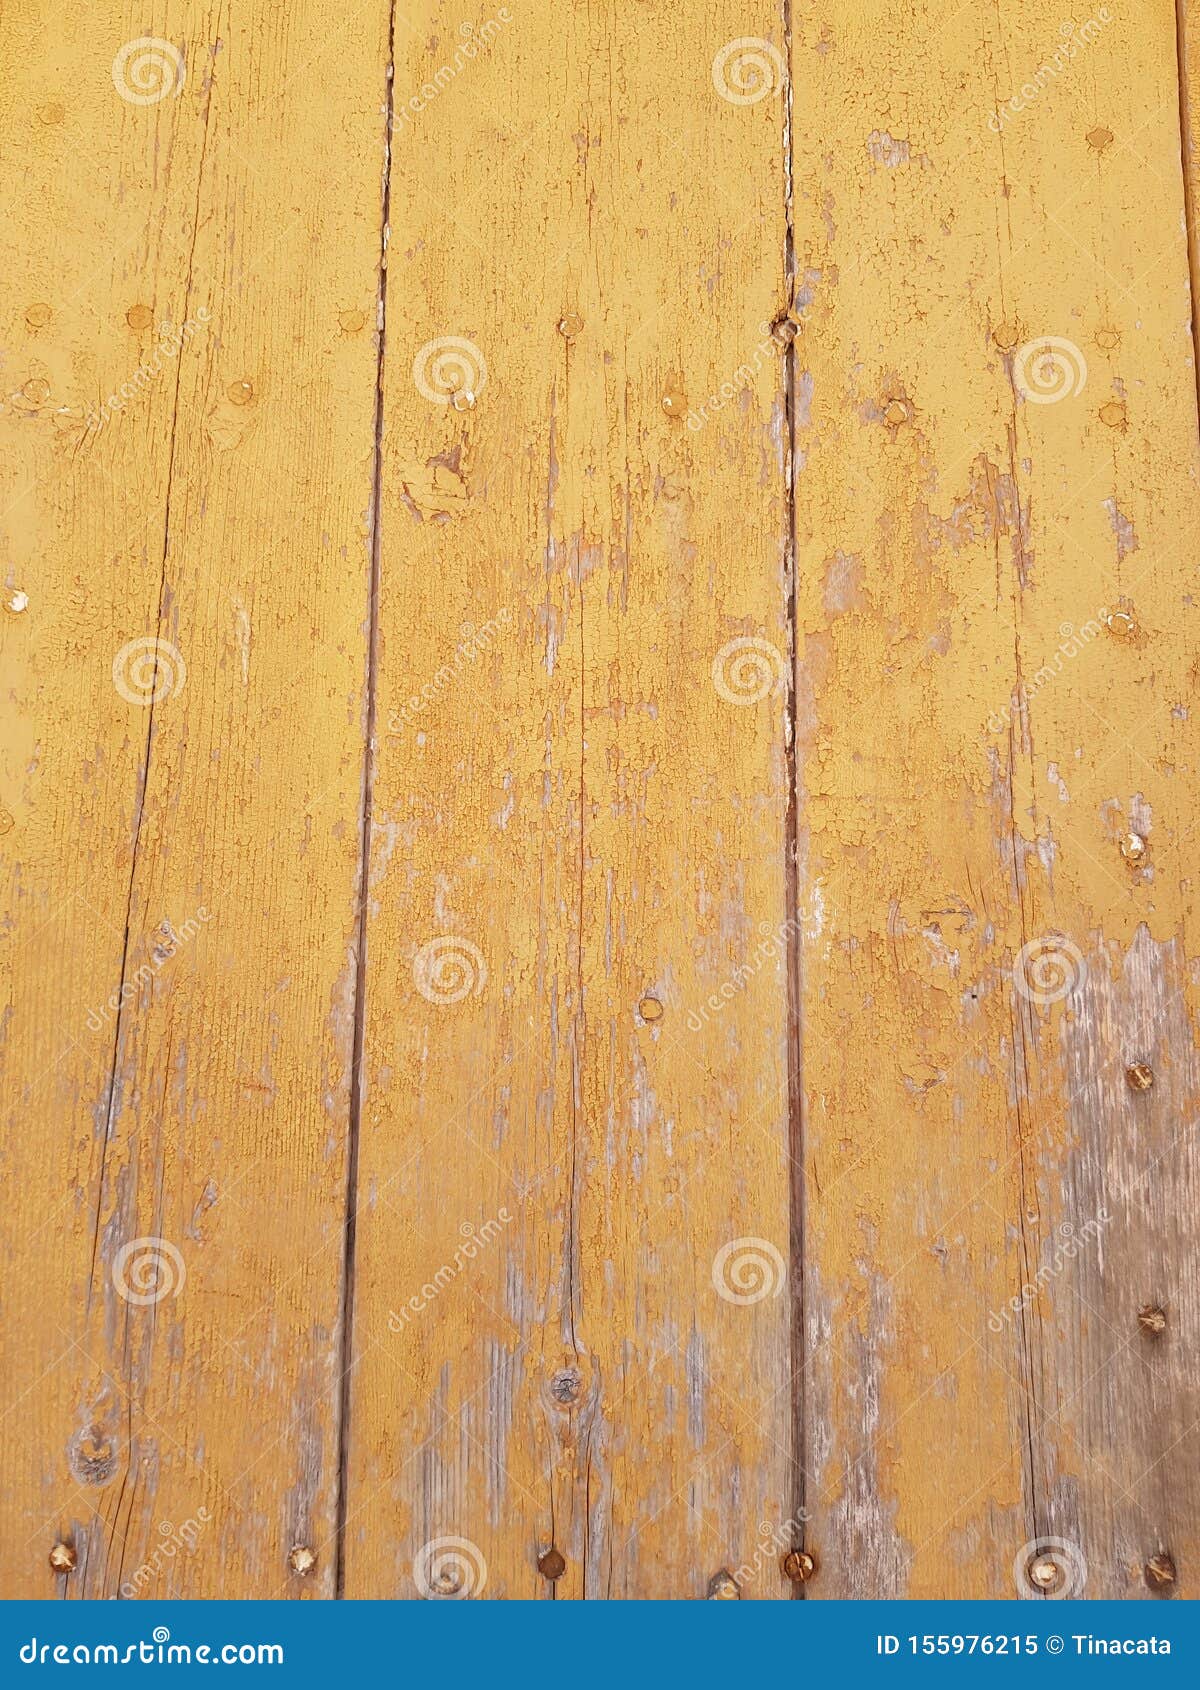 rusty yellow mustard wood door